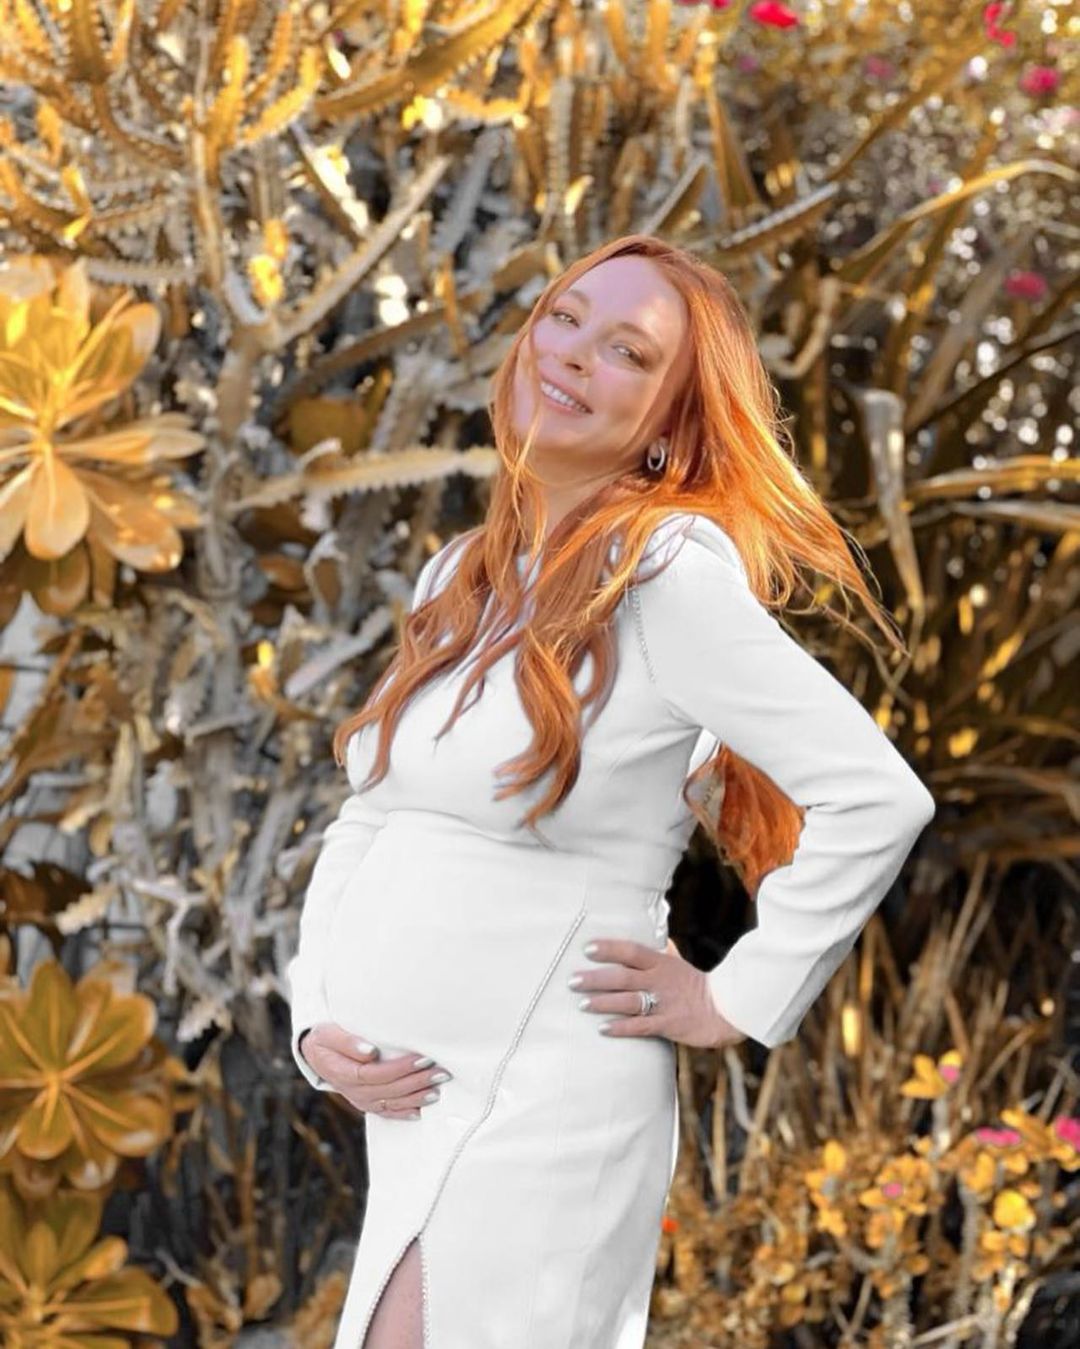 Fotos n°1 : Lindsay Lohan muestra su bulto!